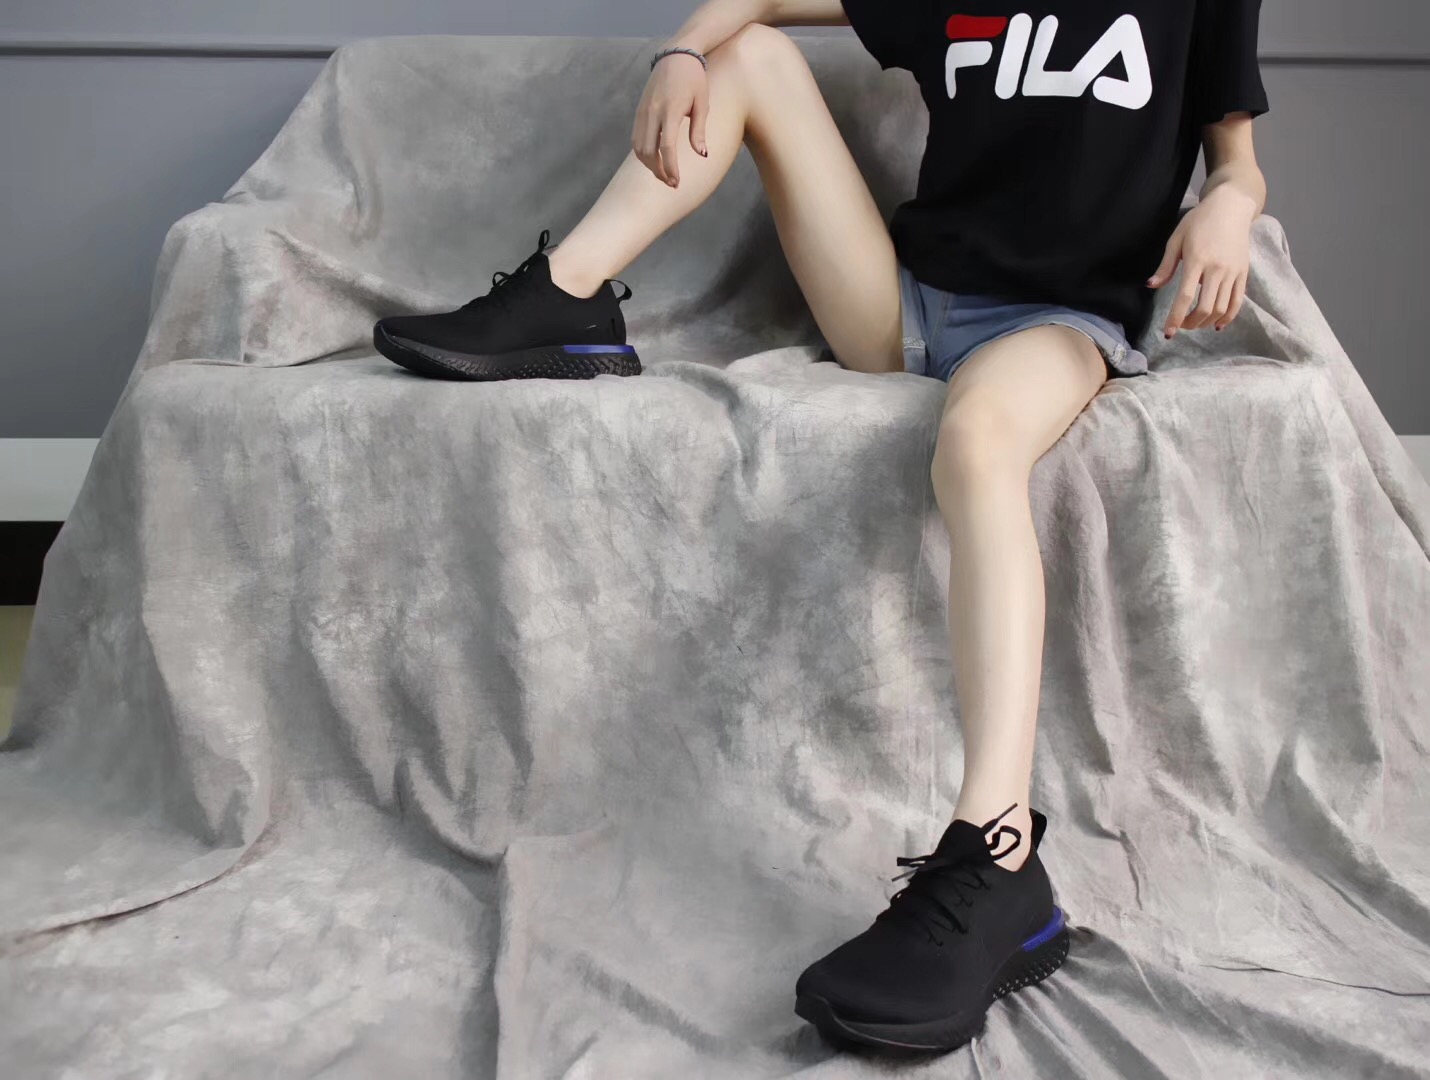 Giày Nike Epic React FlyKnit màu đen